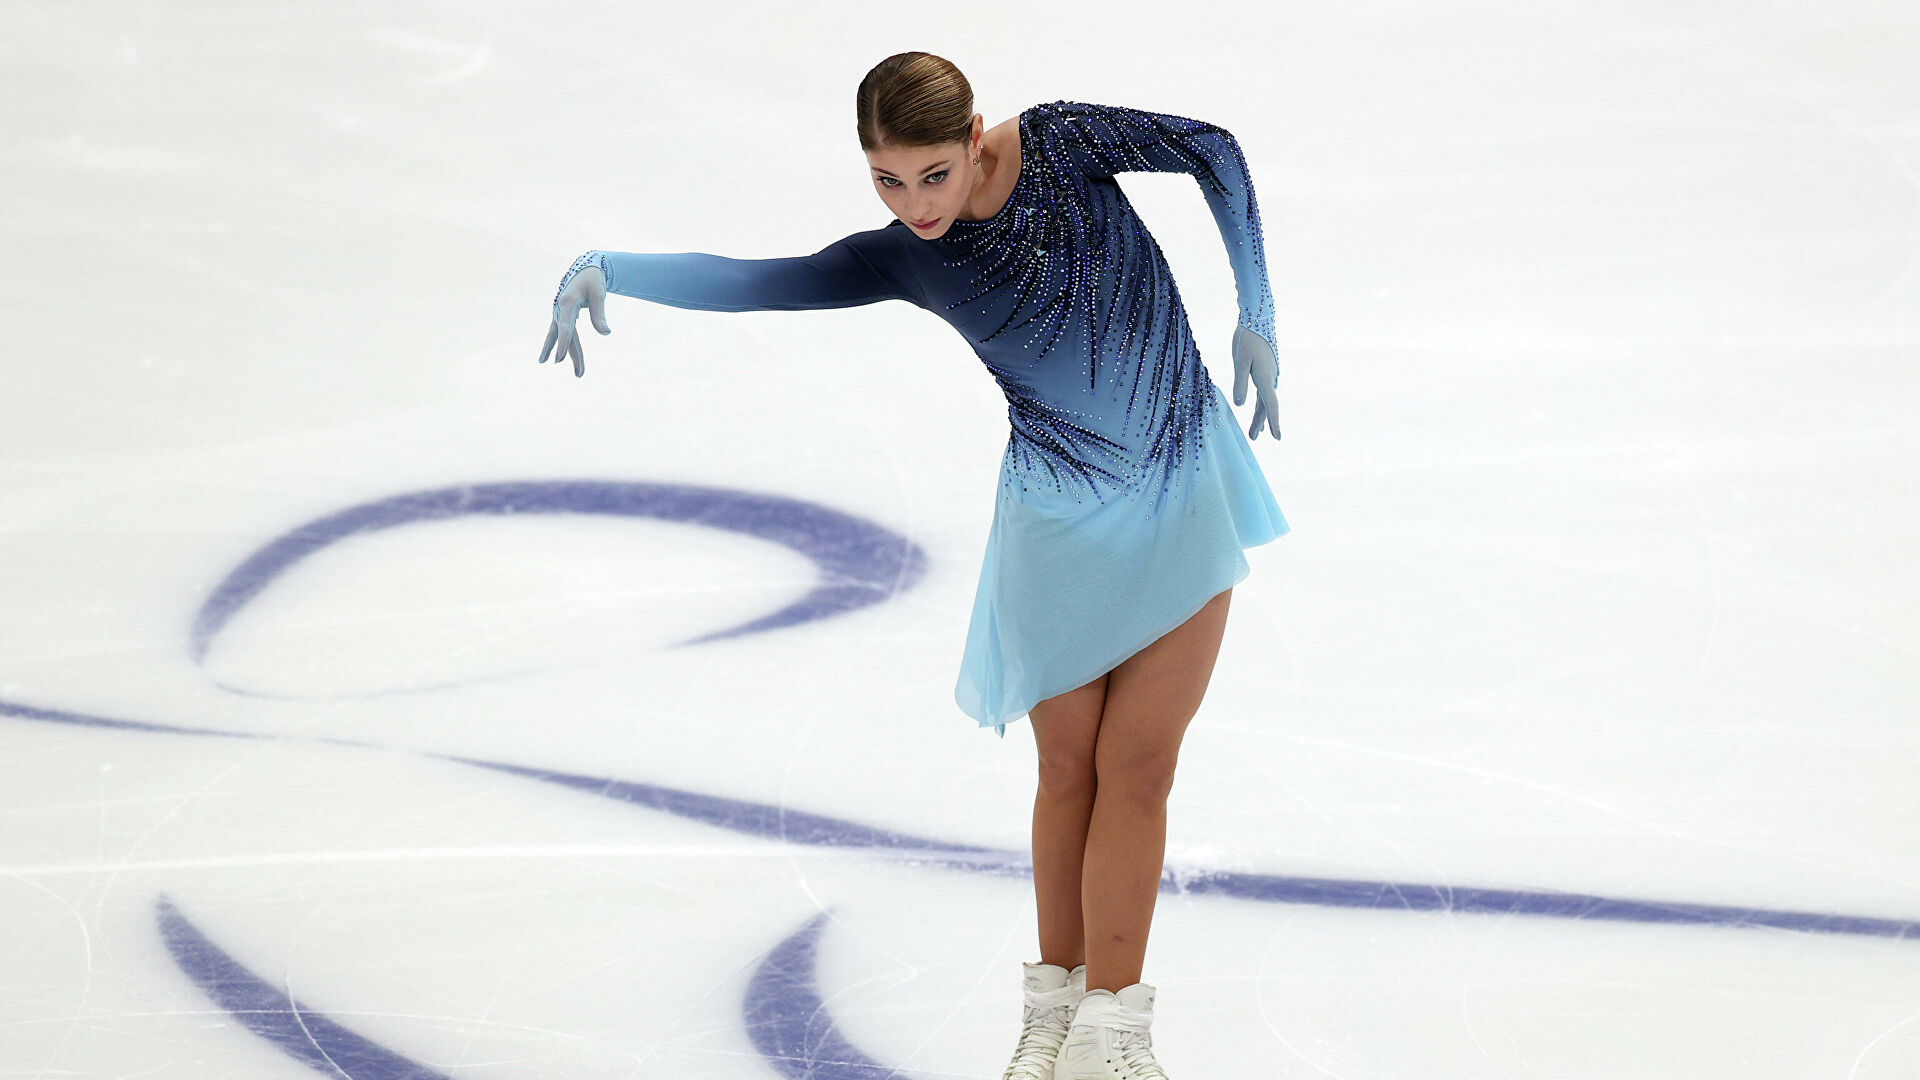 Алена Косторная по результатам короткой программы финала Кубка России оказалась лишь на шестом месте